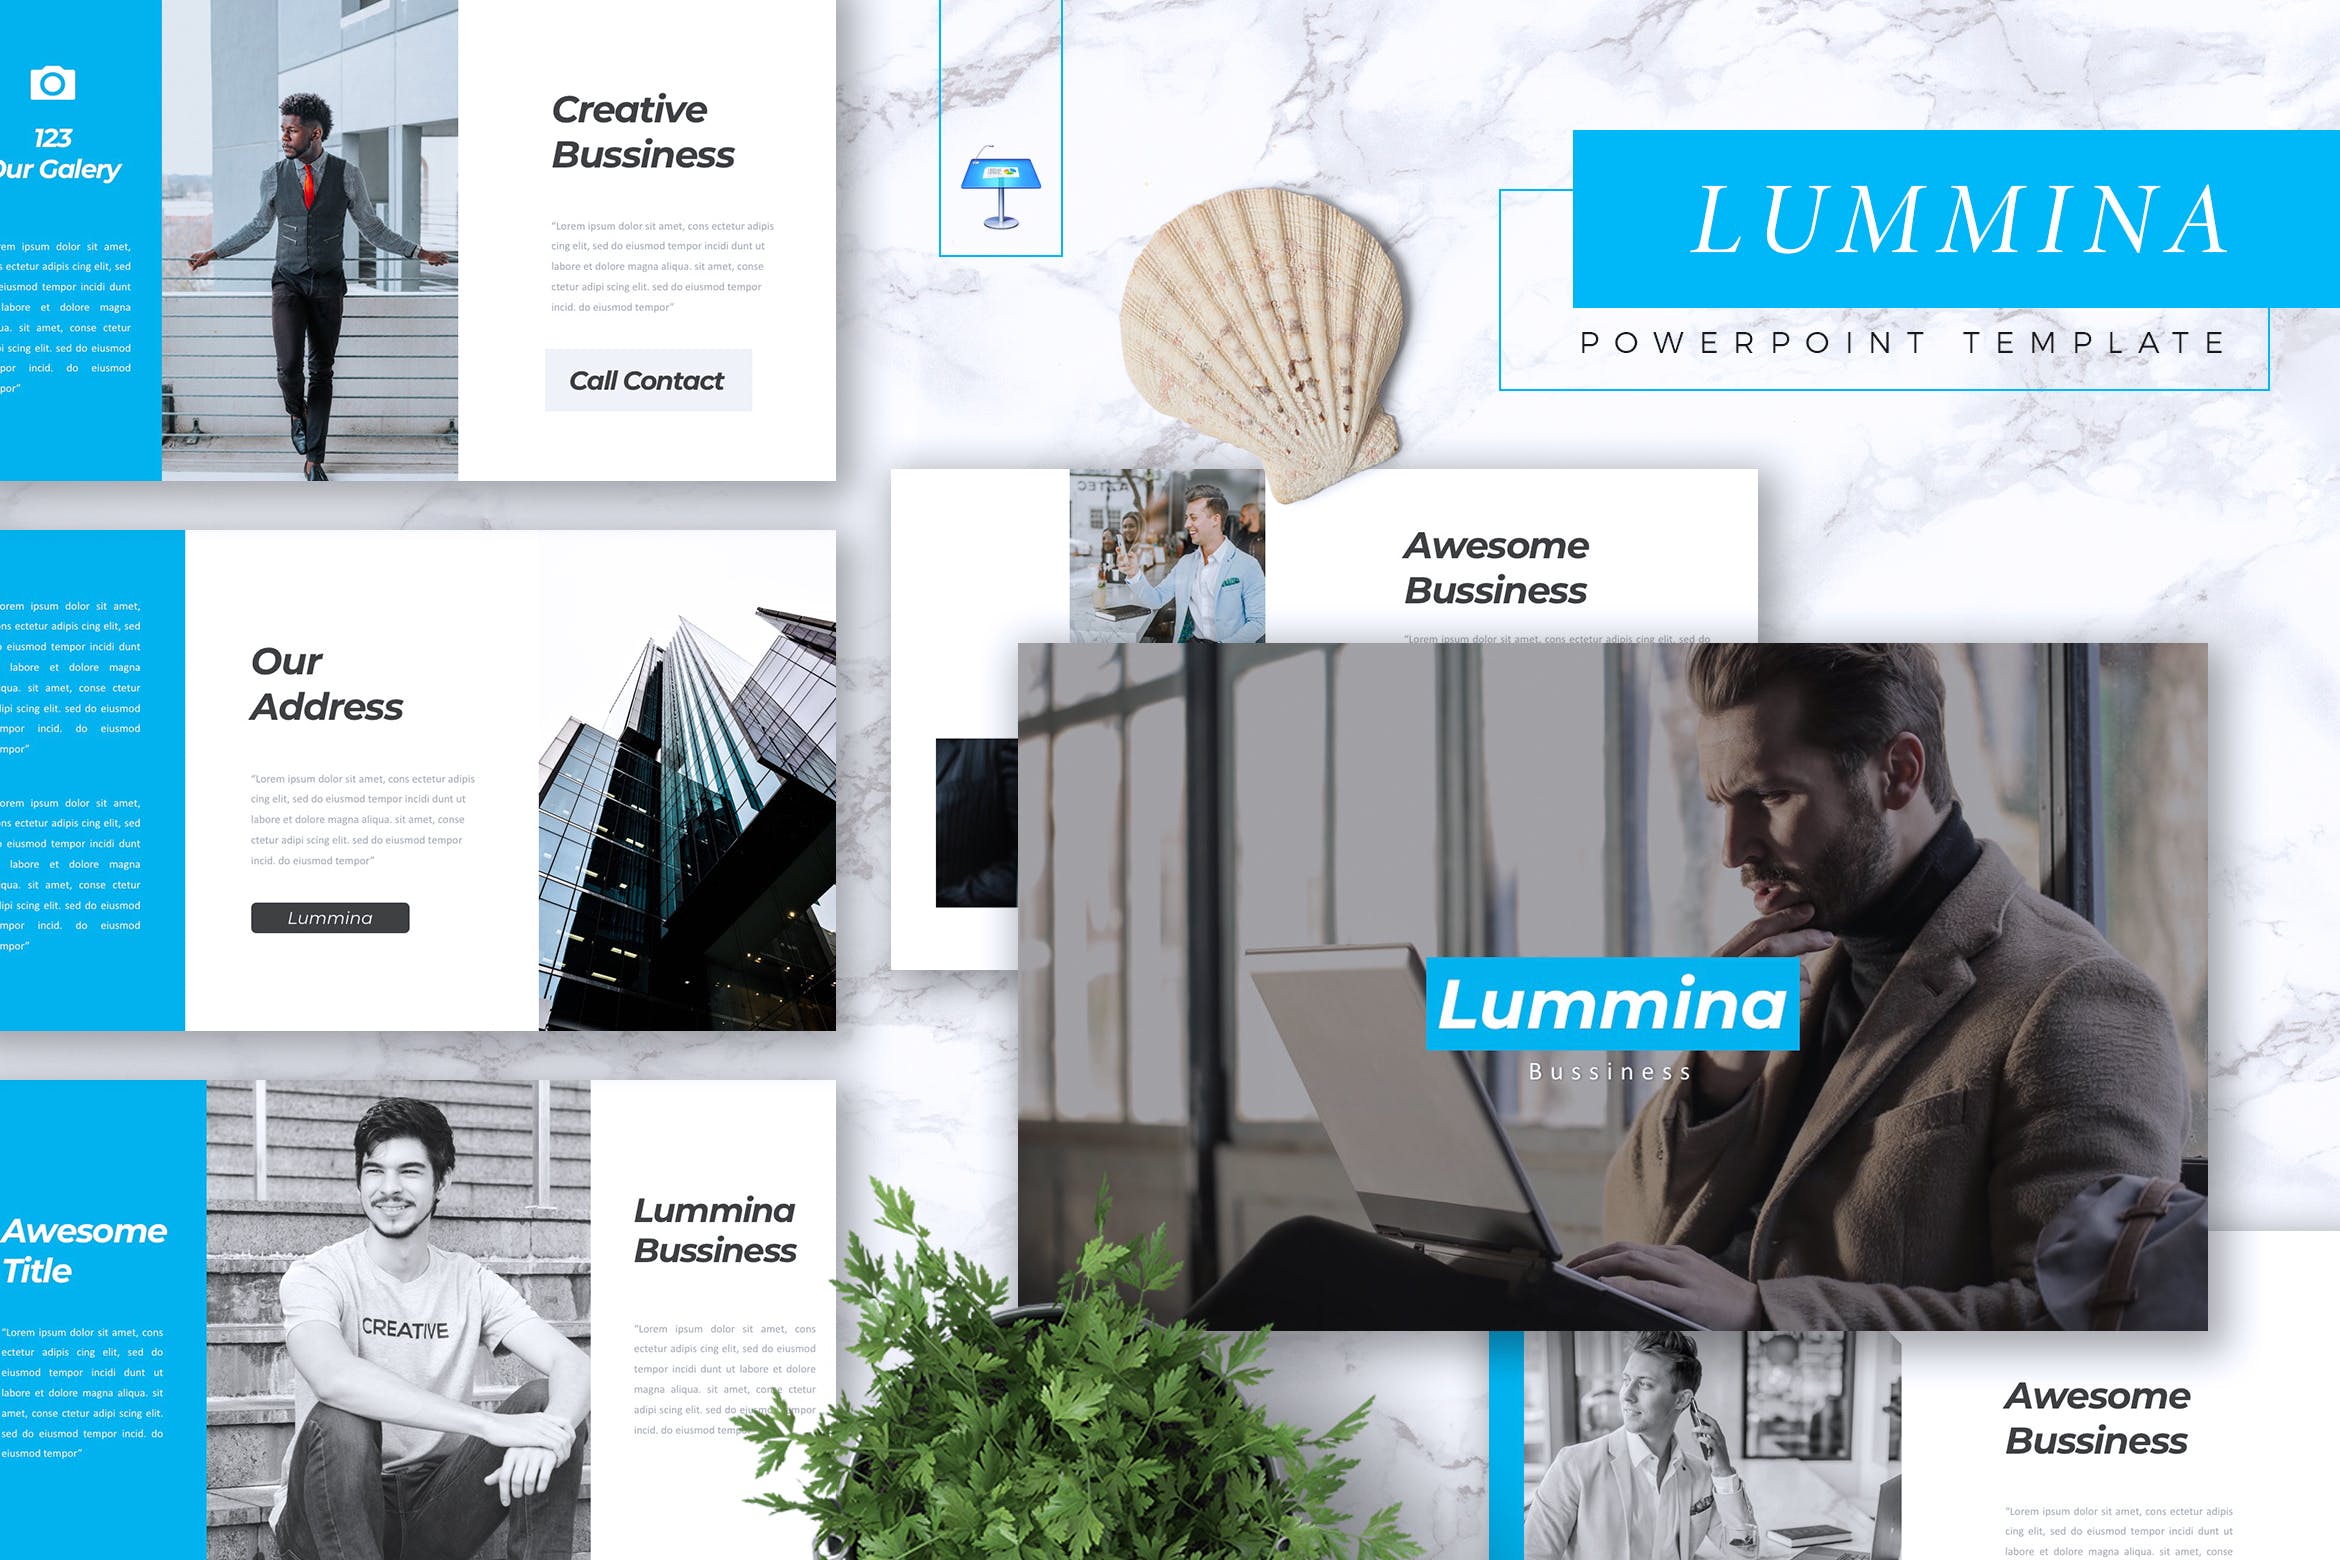 高端企业介绍PPT幻灯片设计模板下载 LUMMINA – Business Powerpoint Template插图